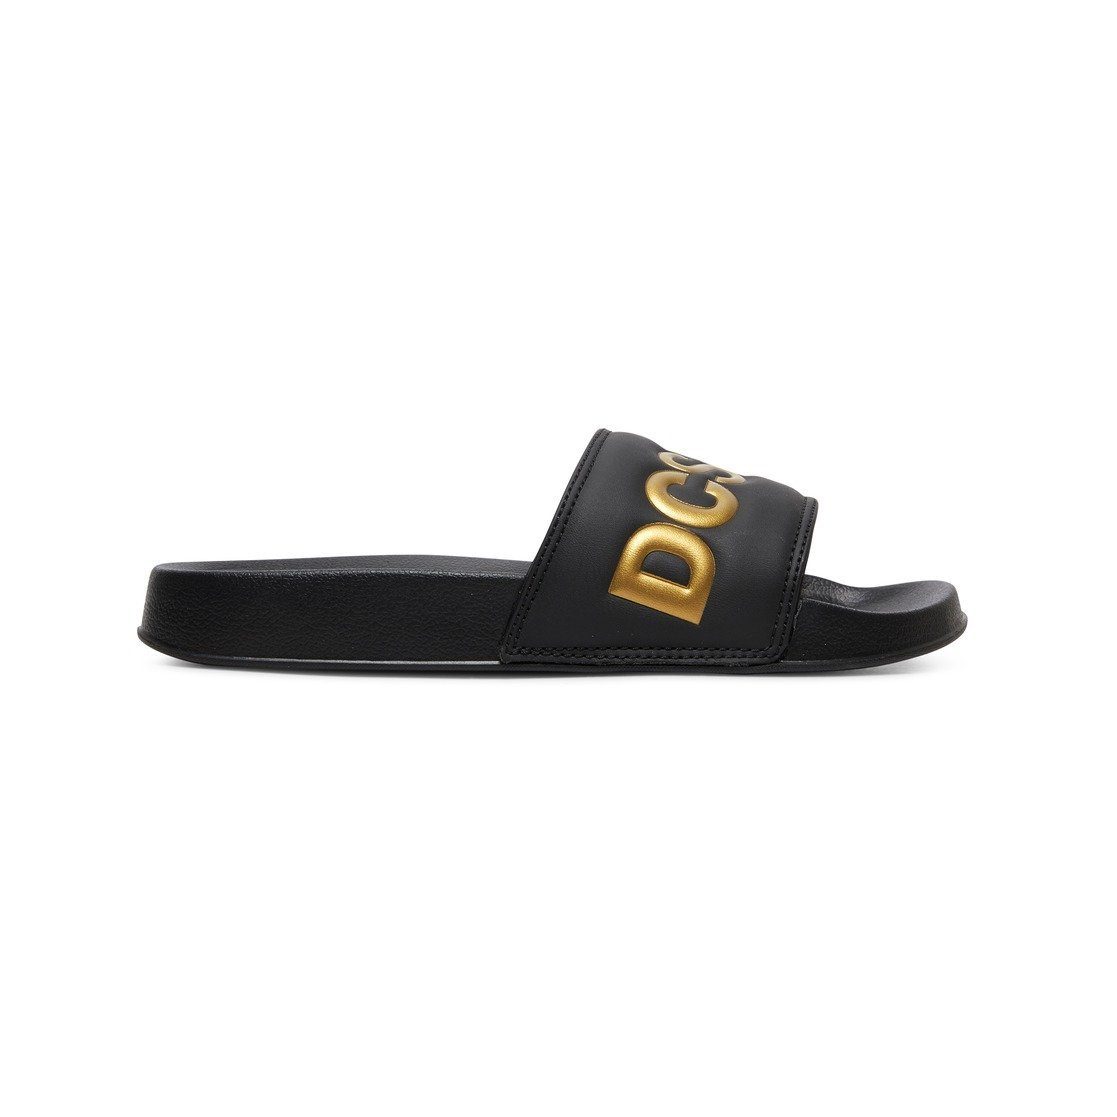 DC Slides Black/Gold Sandale Shoes SE DC